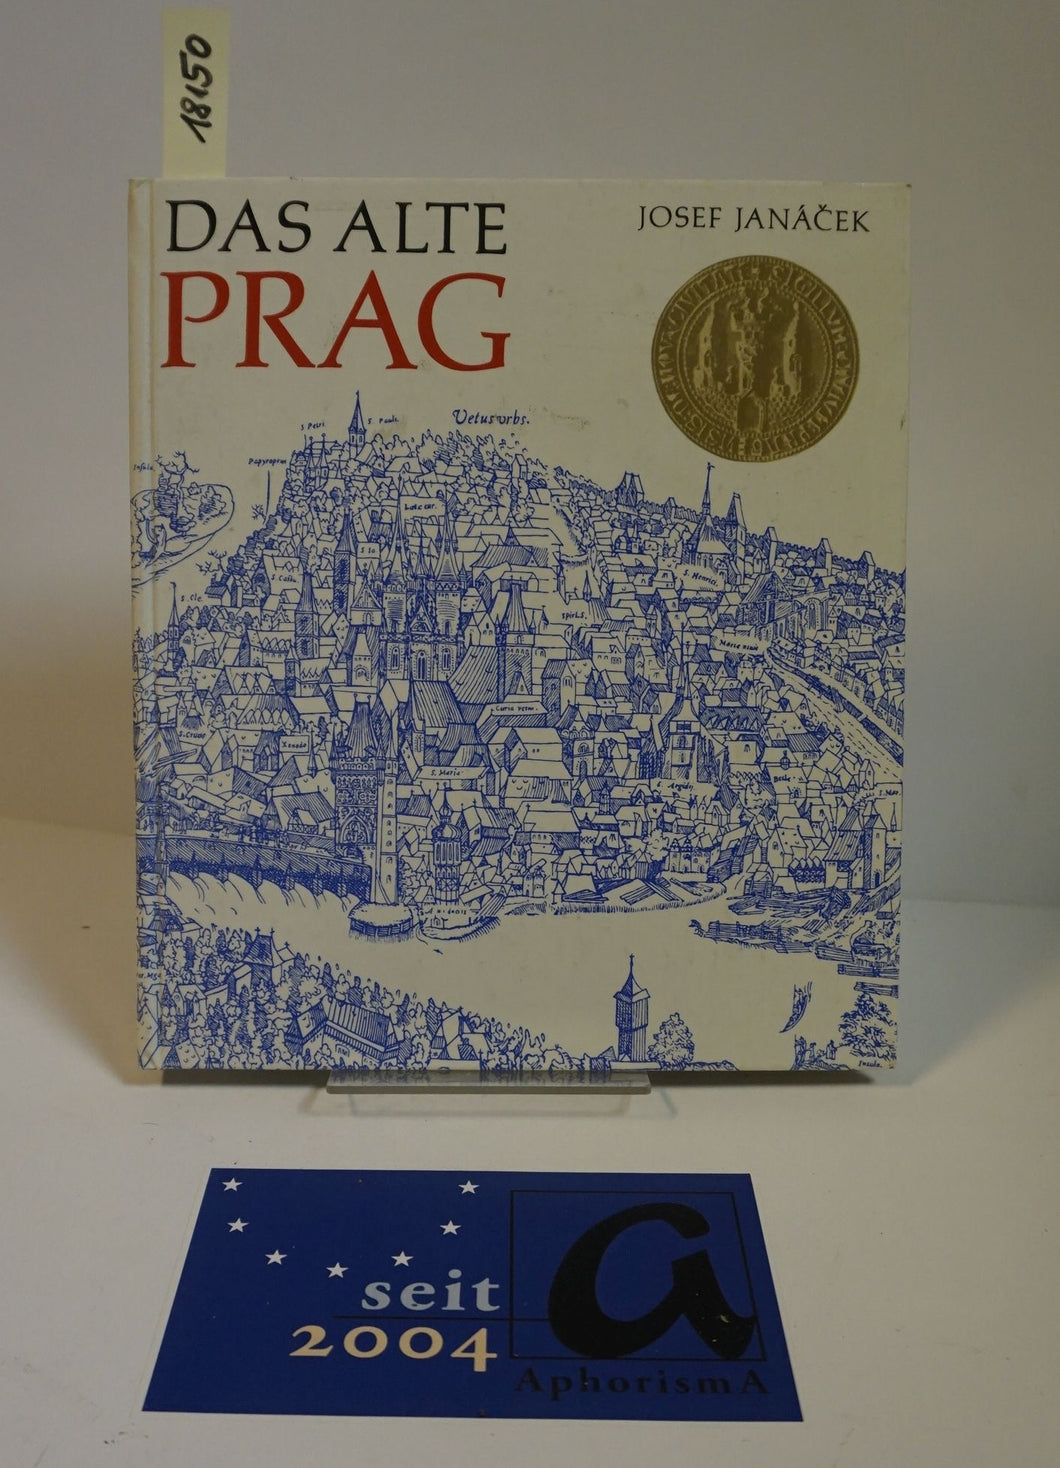 Das alte Prag